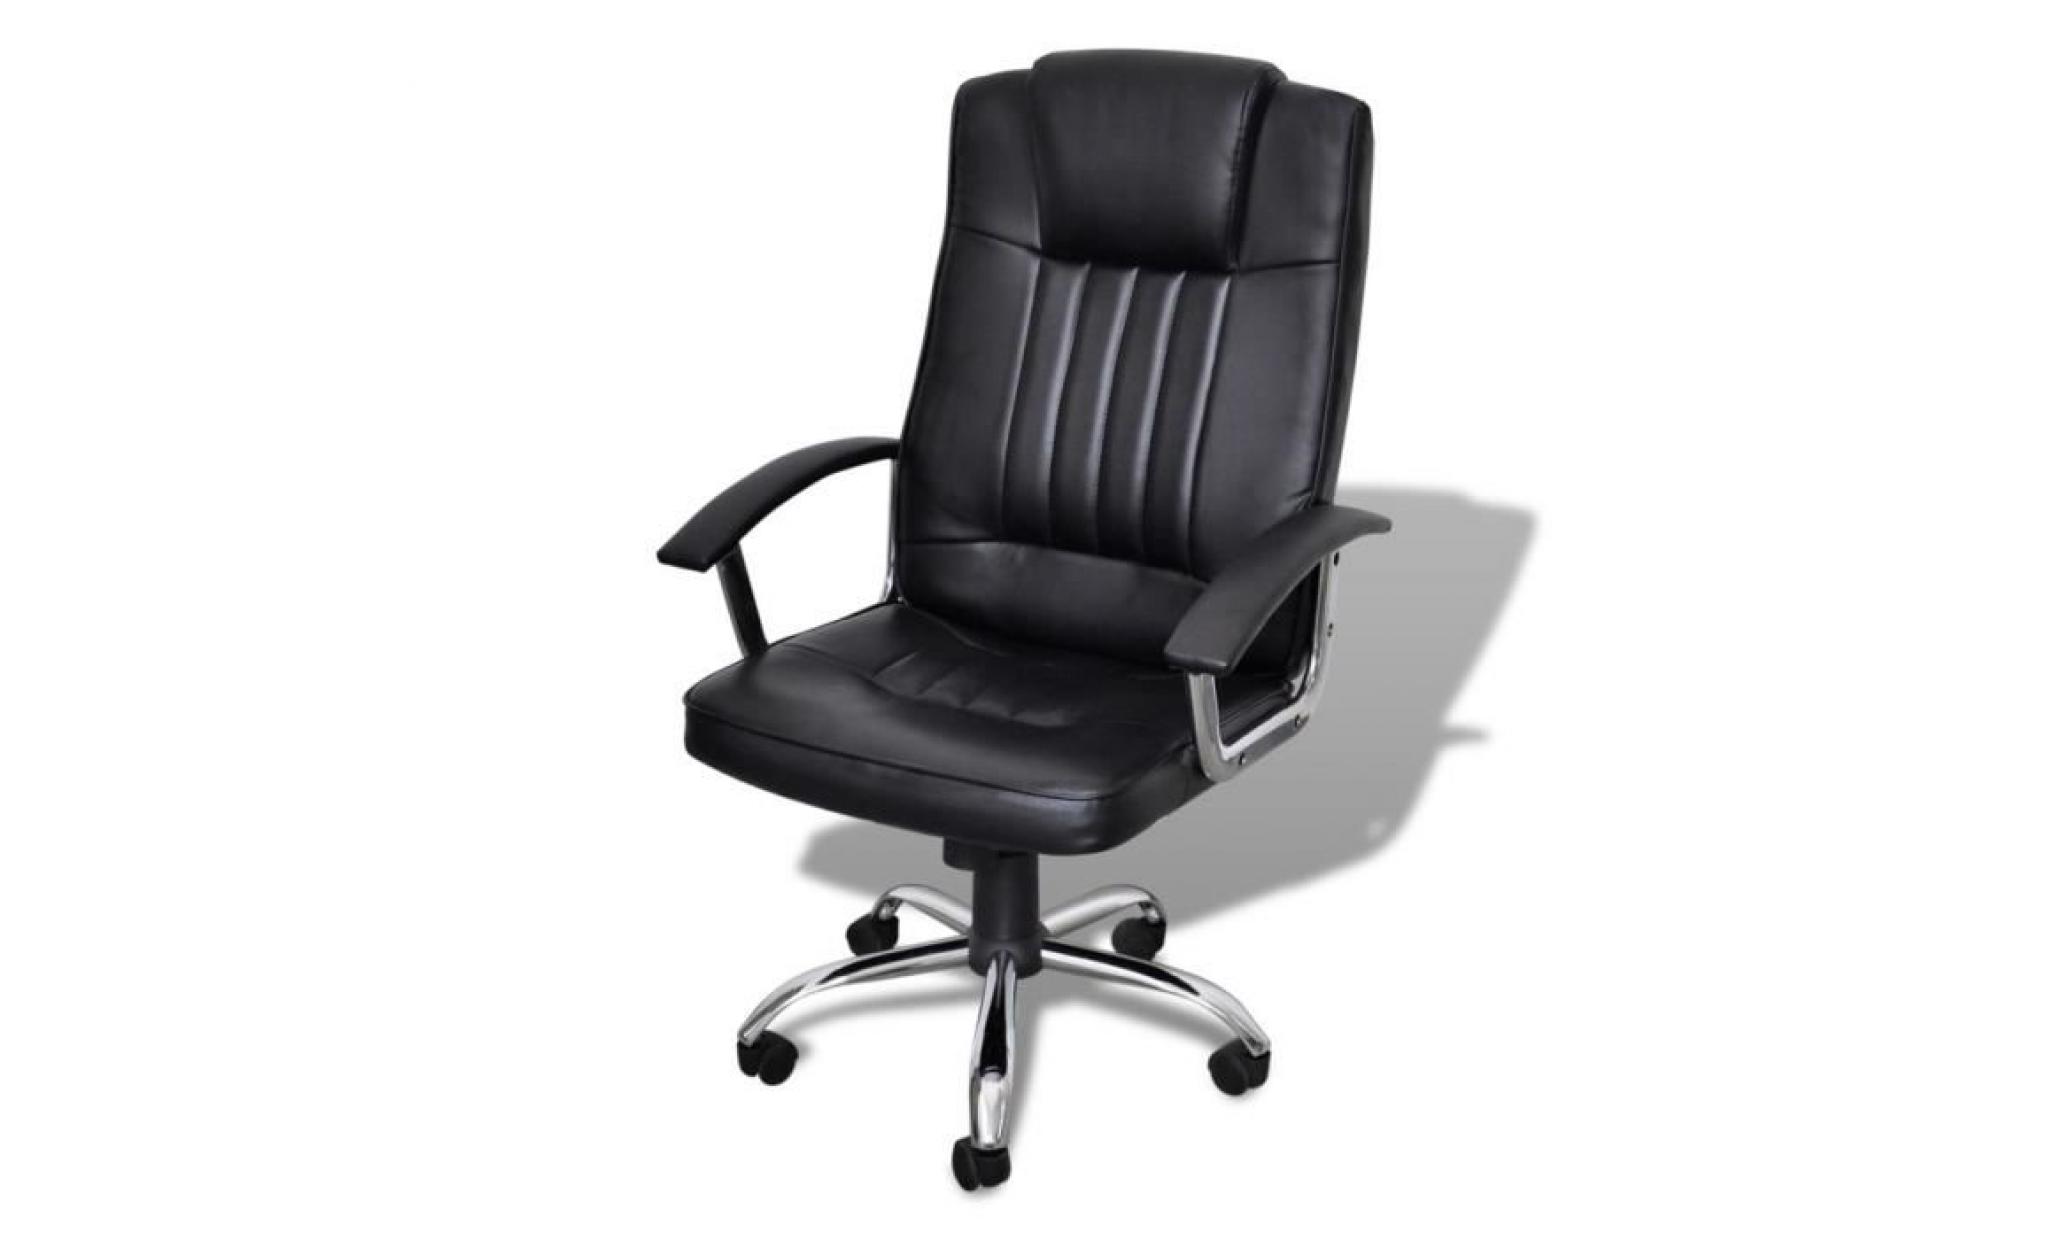 fauteuil de bureau ergonomique en similicuir   hauteur réglage   360 degrés pivotant   style d'affaire   chaise de bureau noir